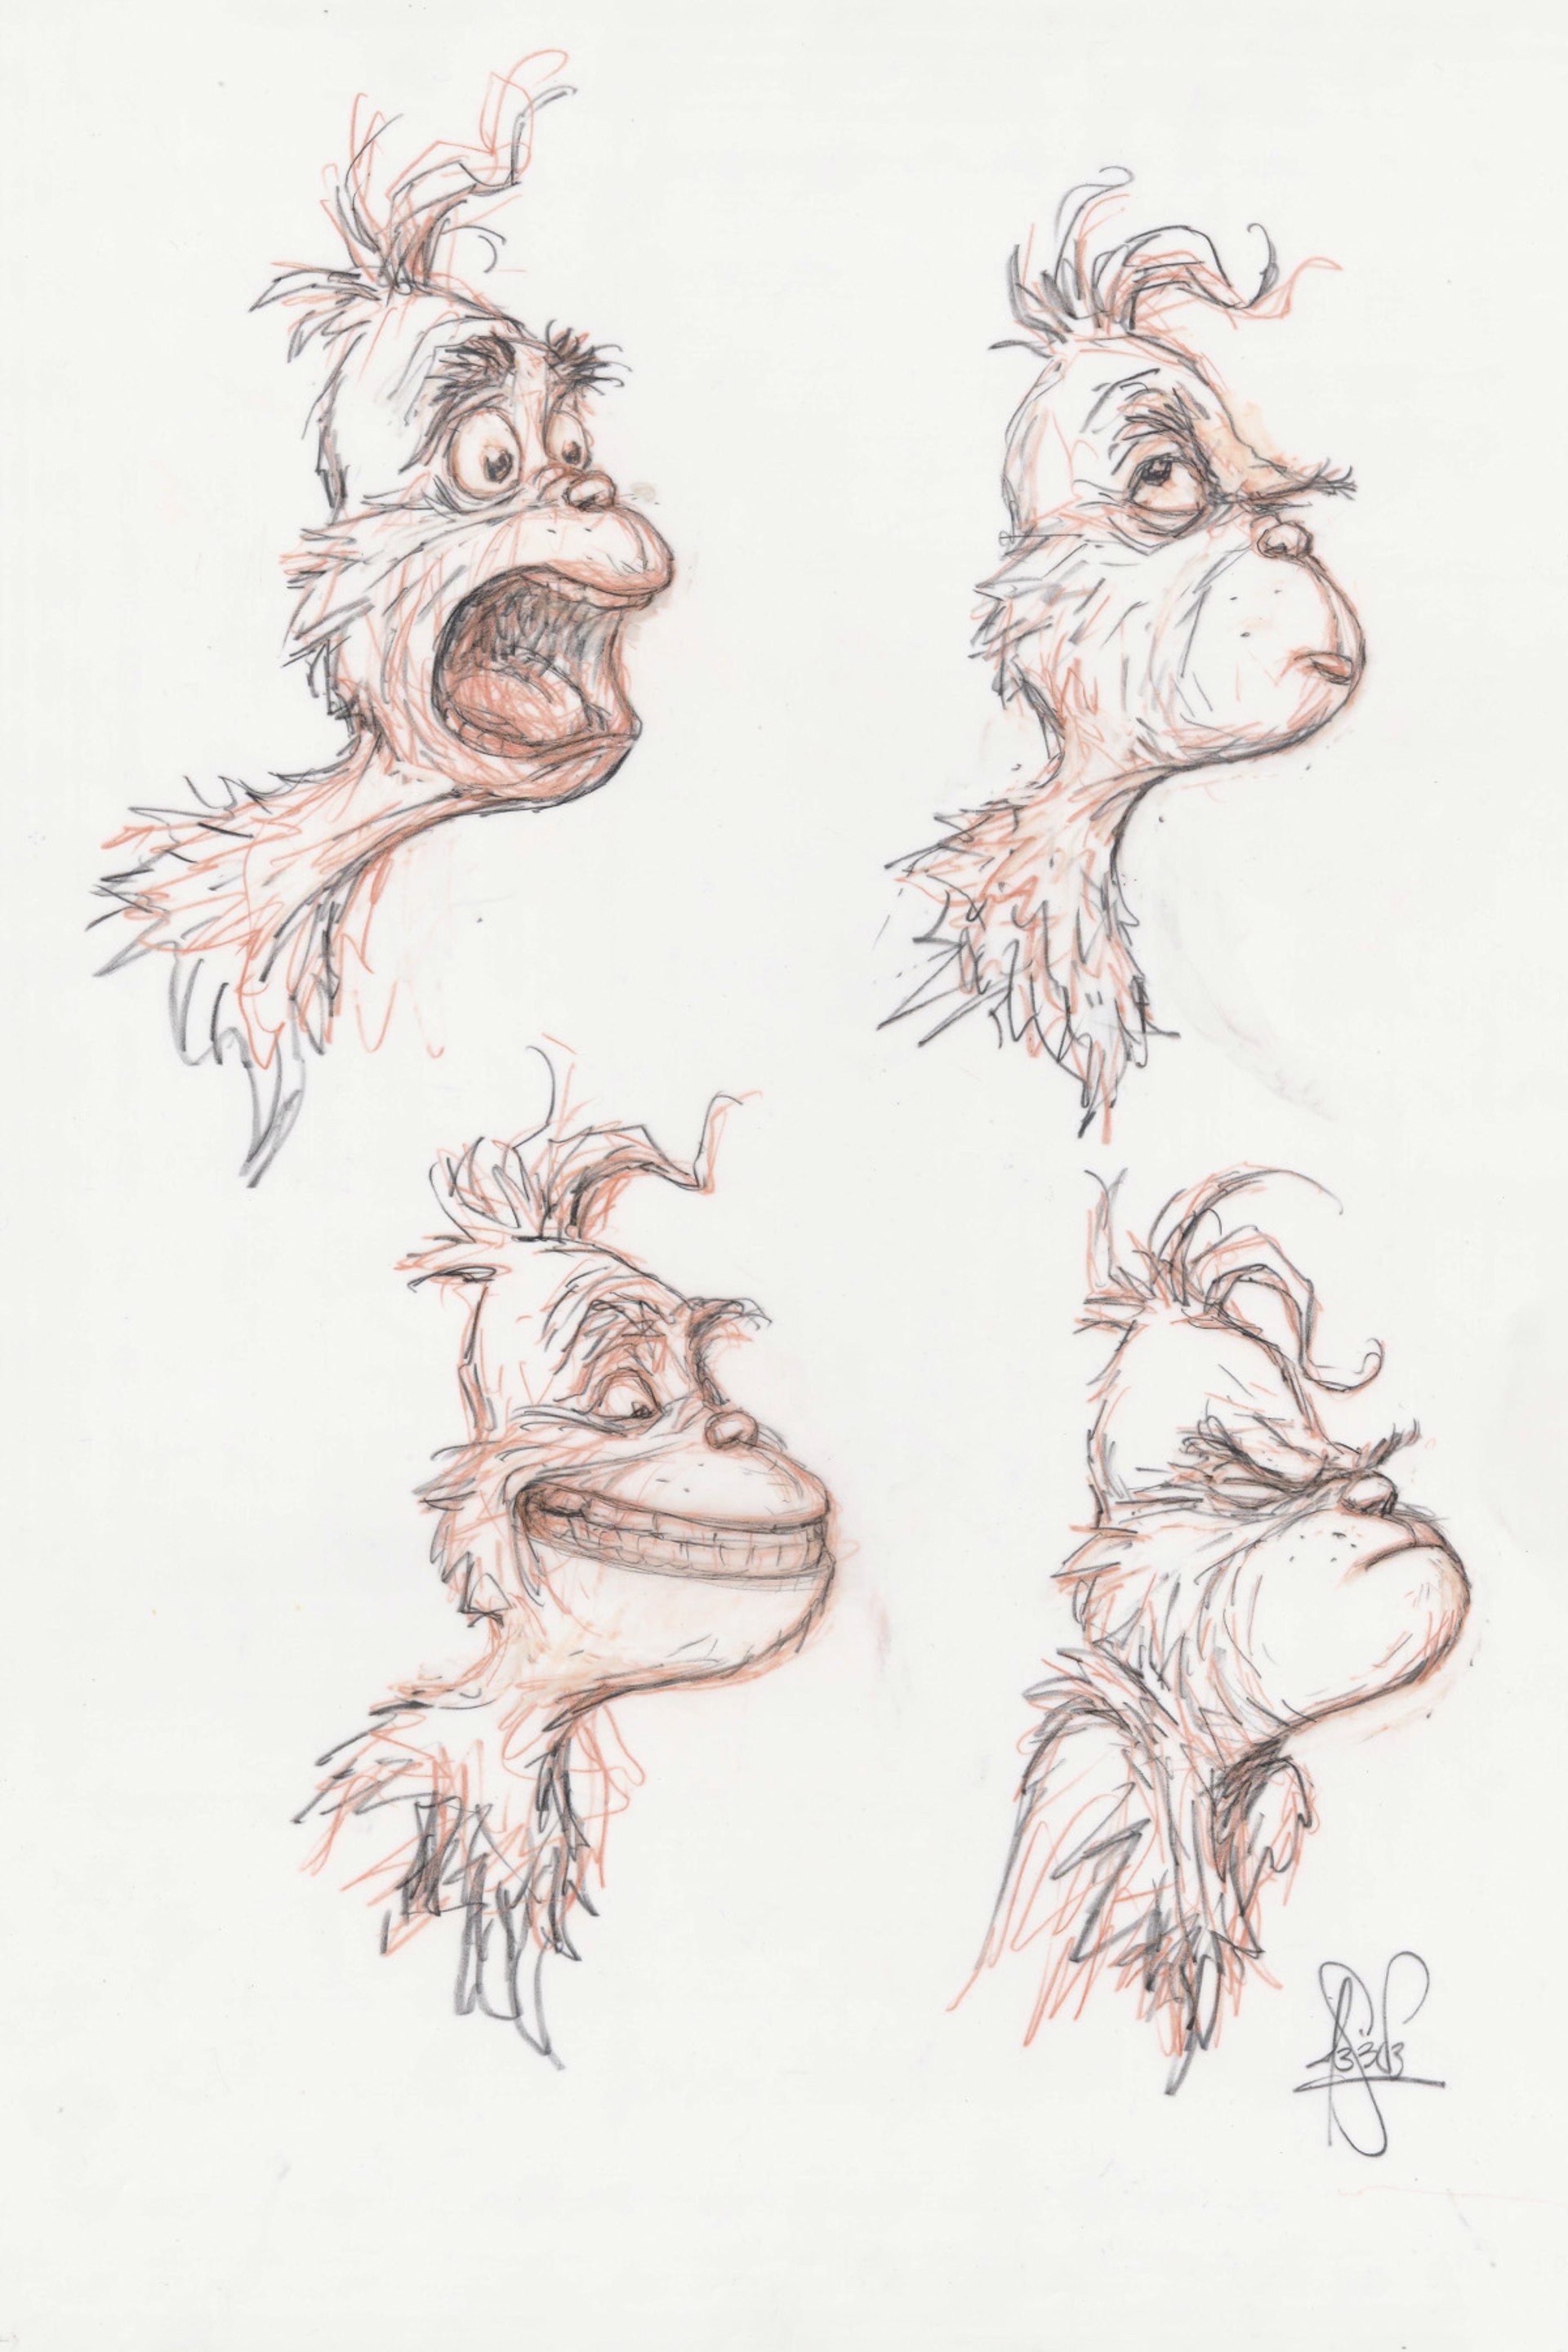 Grinch expressions 1 by Peter de Sève